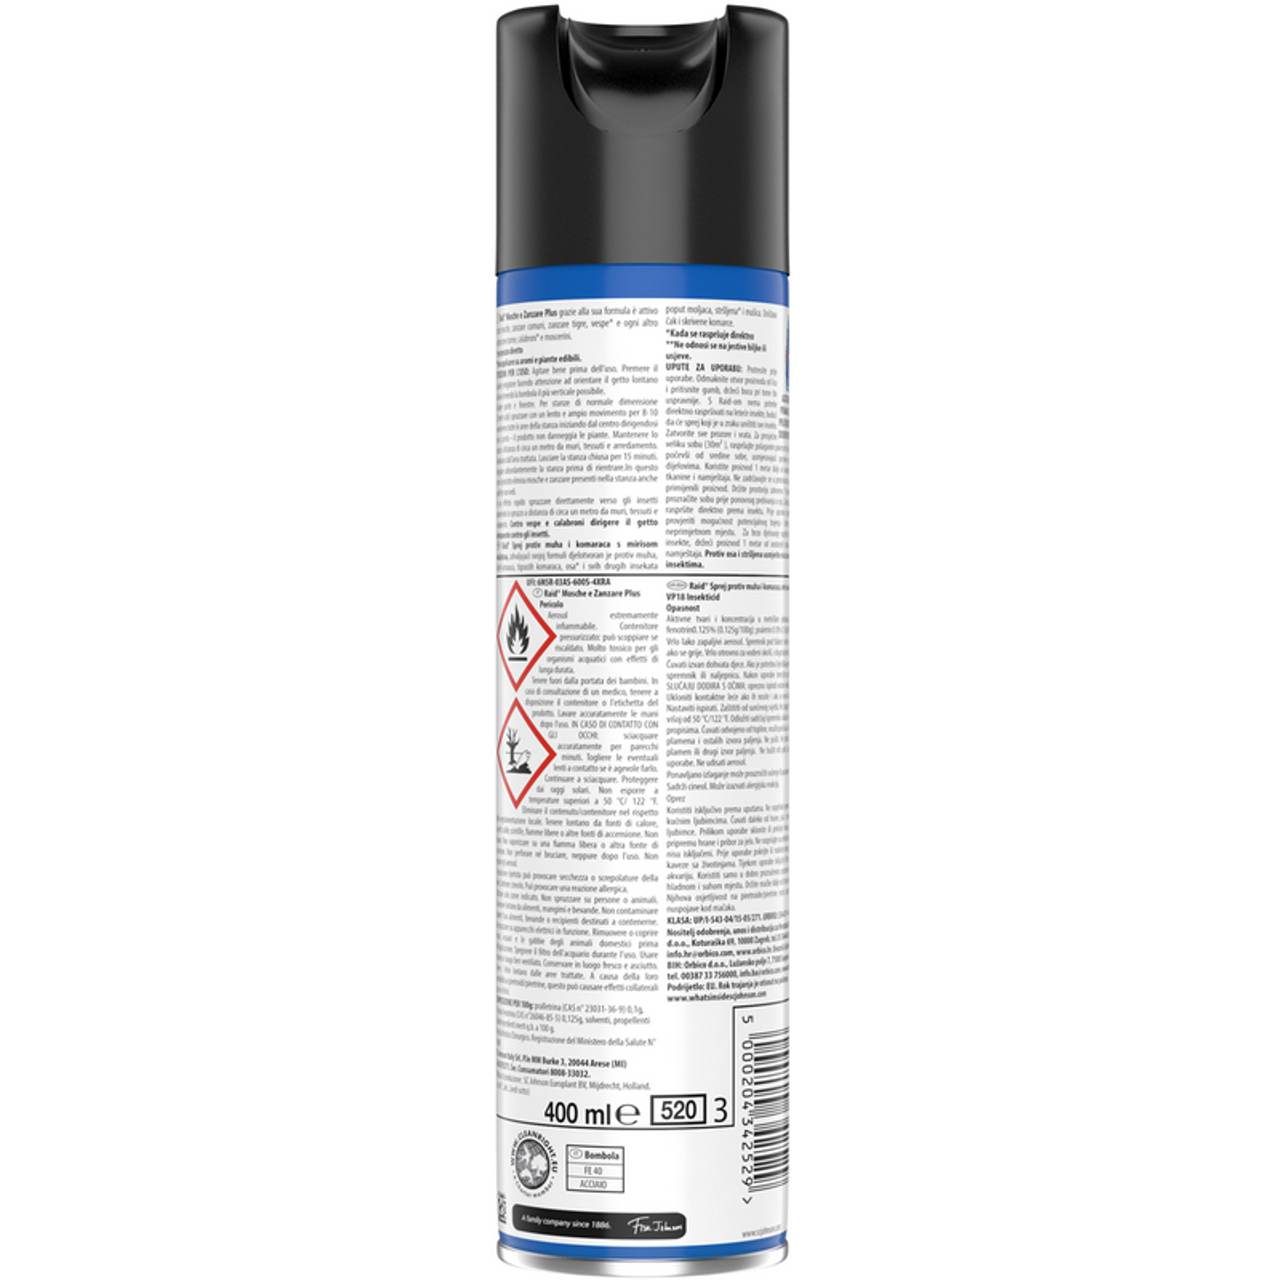 Raid Insectide Spray Flies, a także komary szybkie działanie z aromatem oleju eukaliptusowym 400 ml